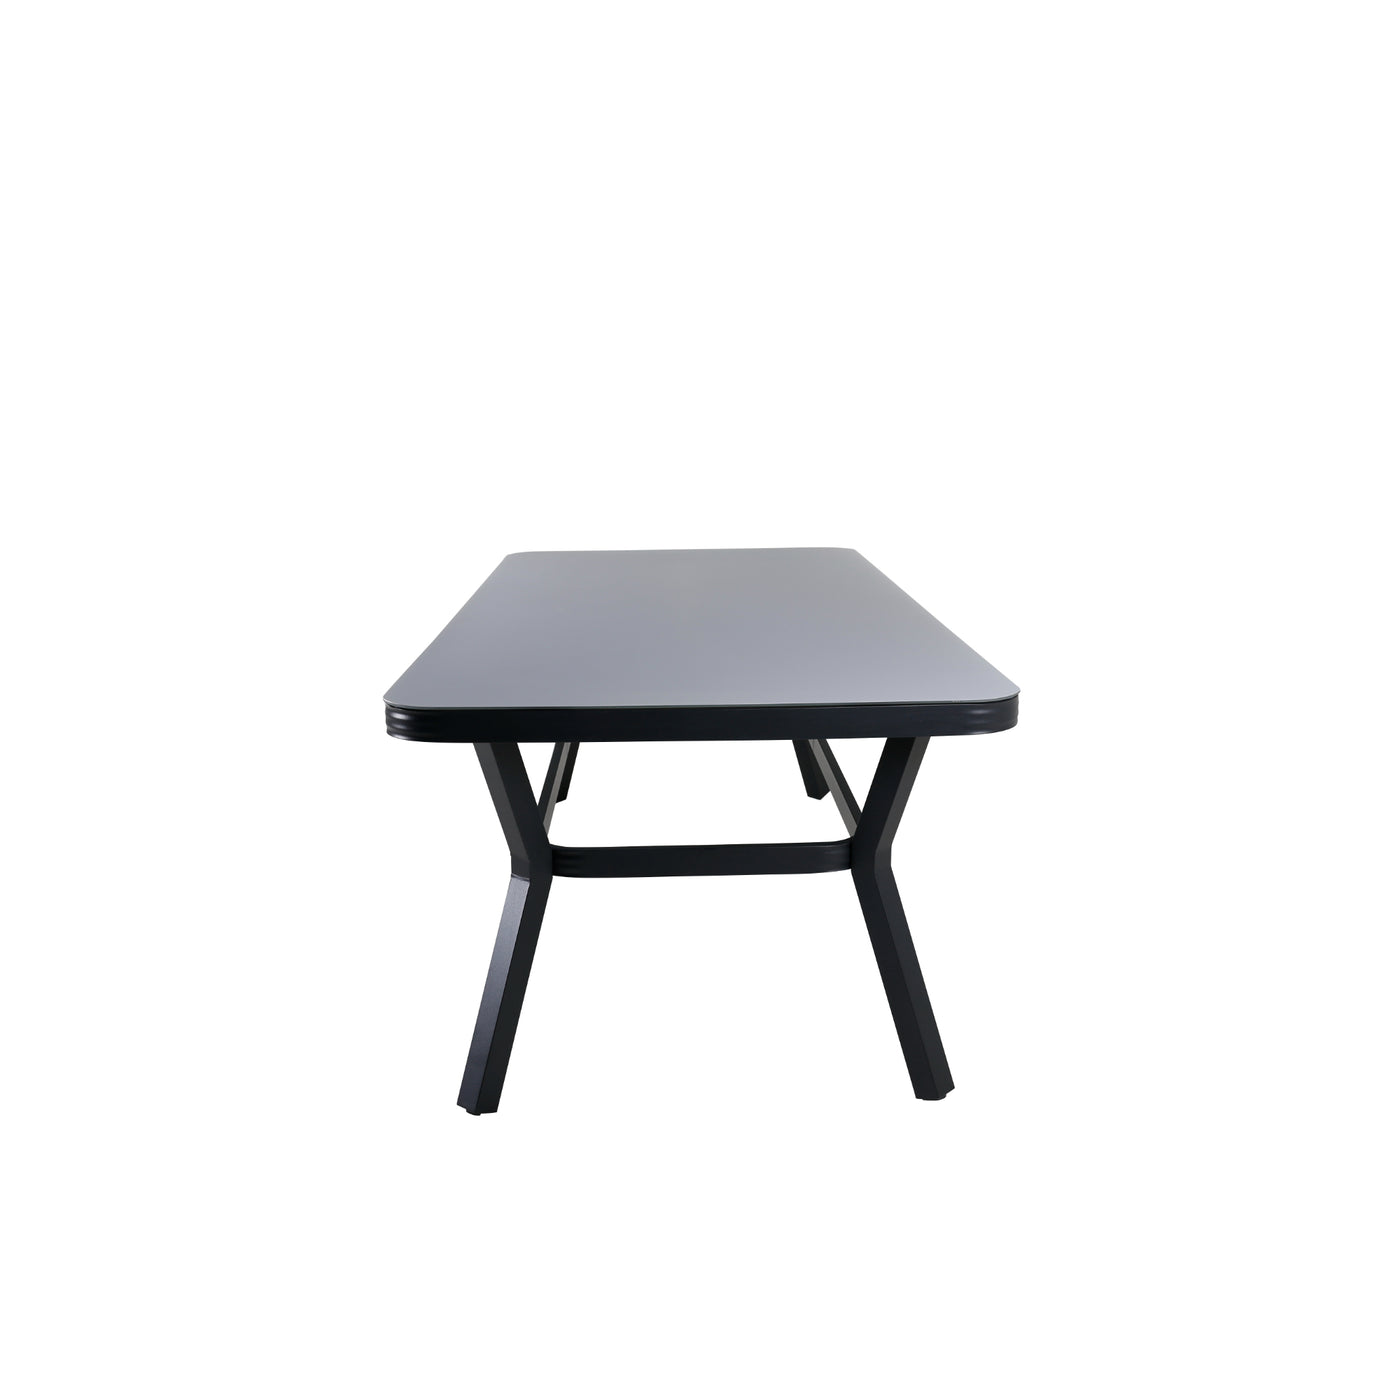 Walworth Esstisch – Schwarzes Alu / Graues Glas – großer Tisch